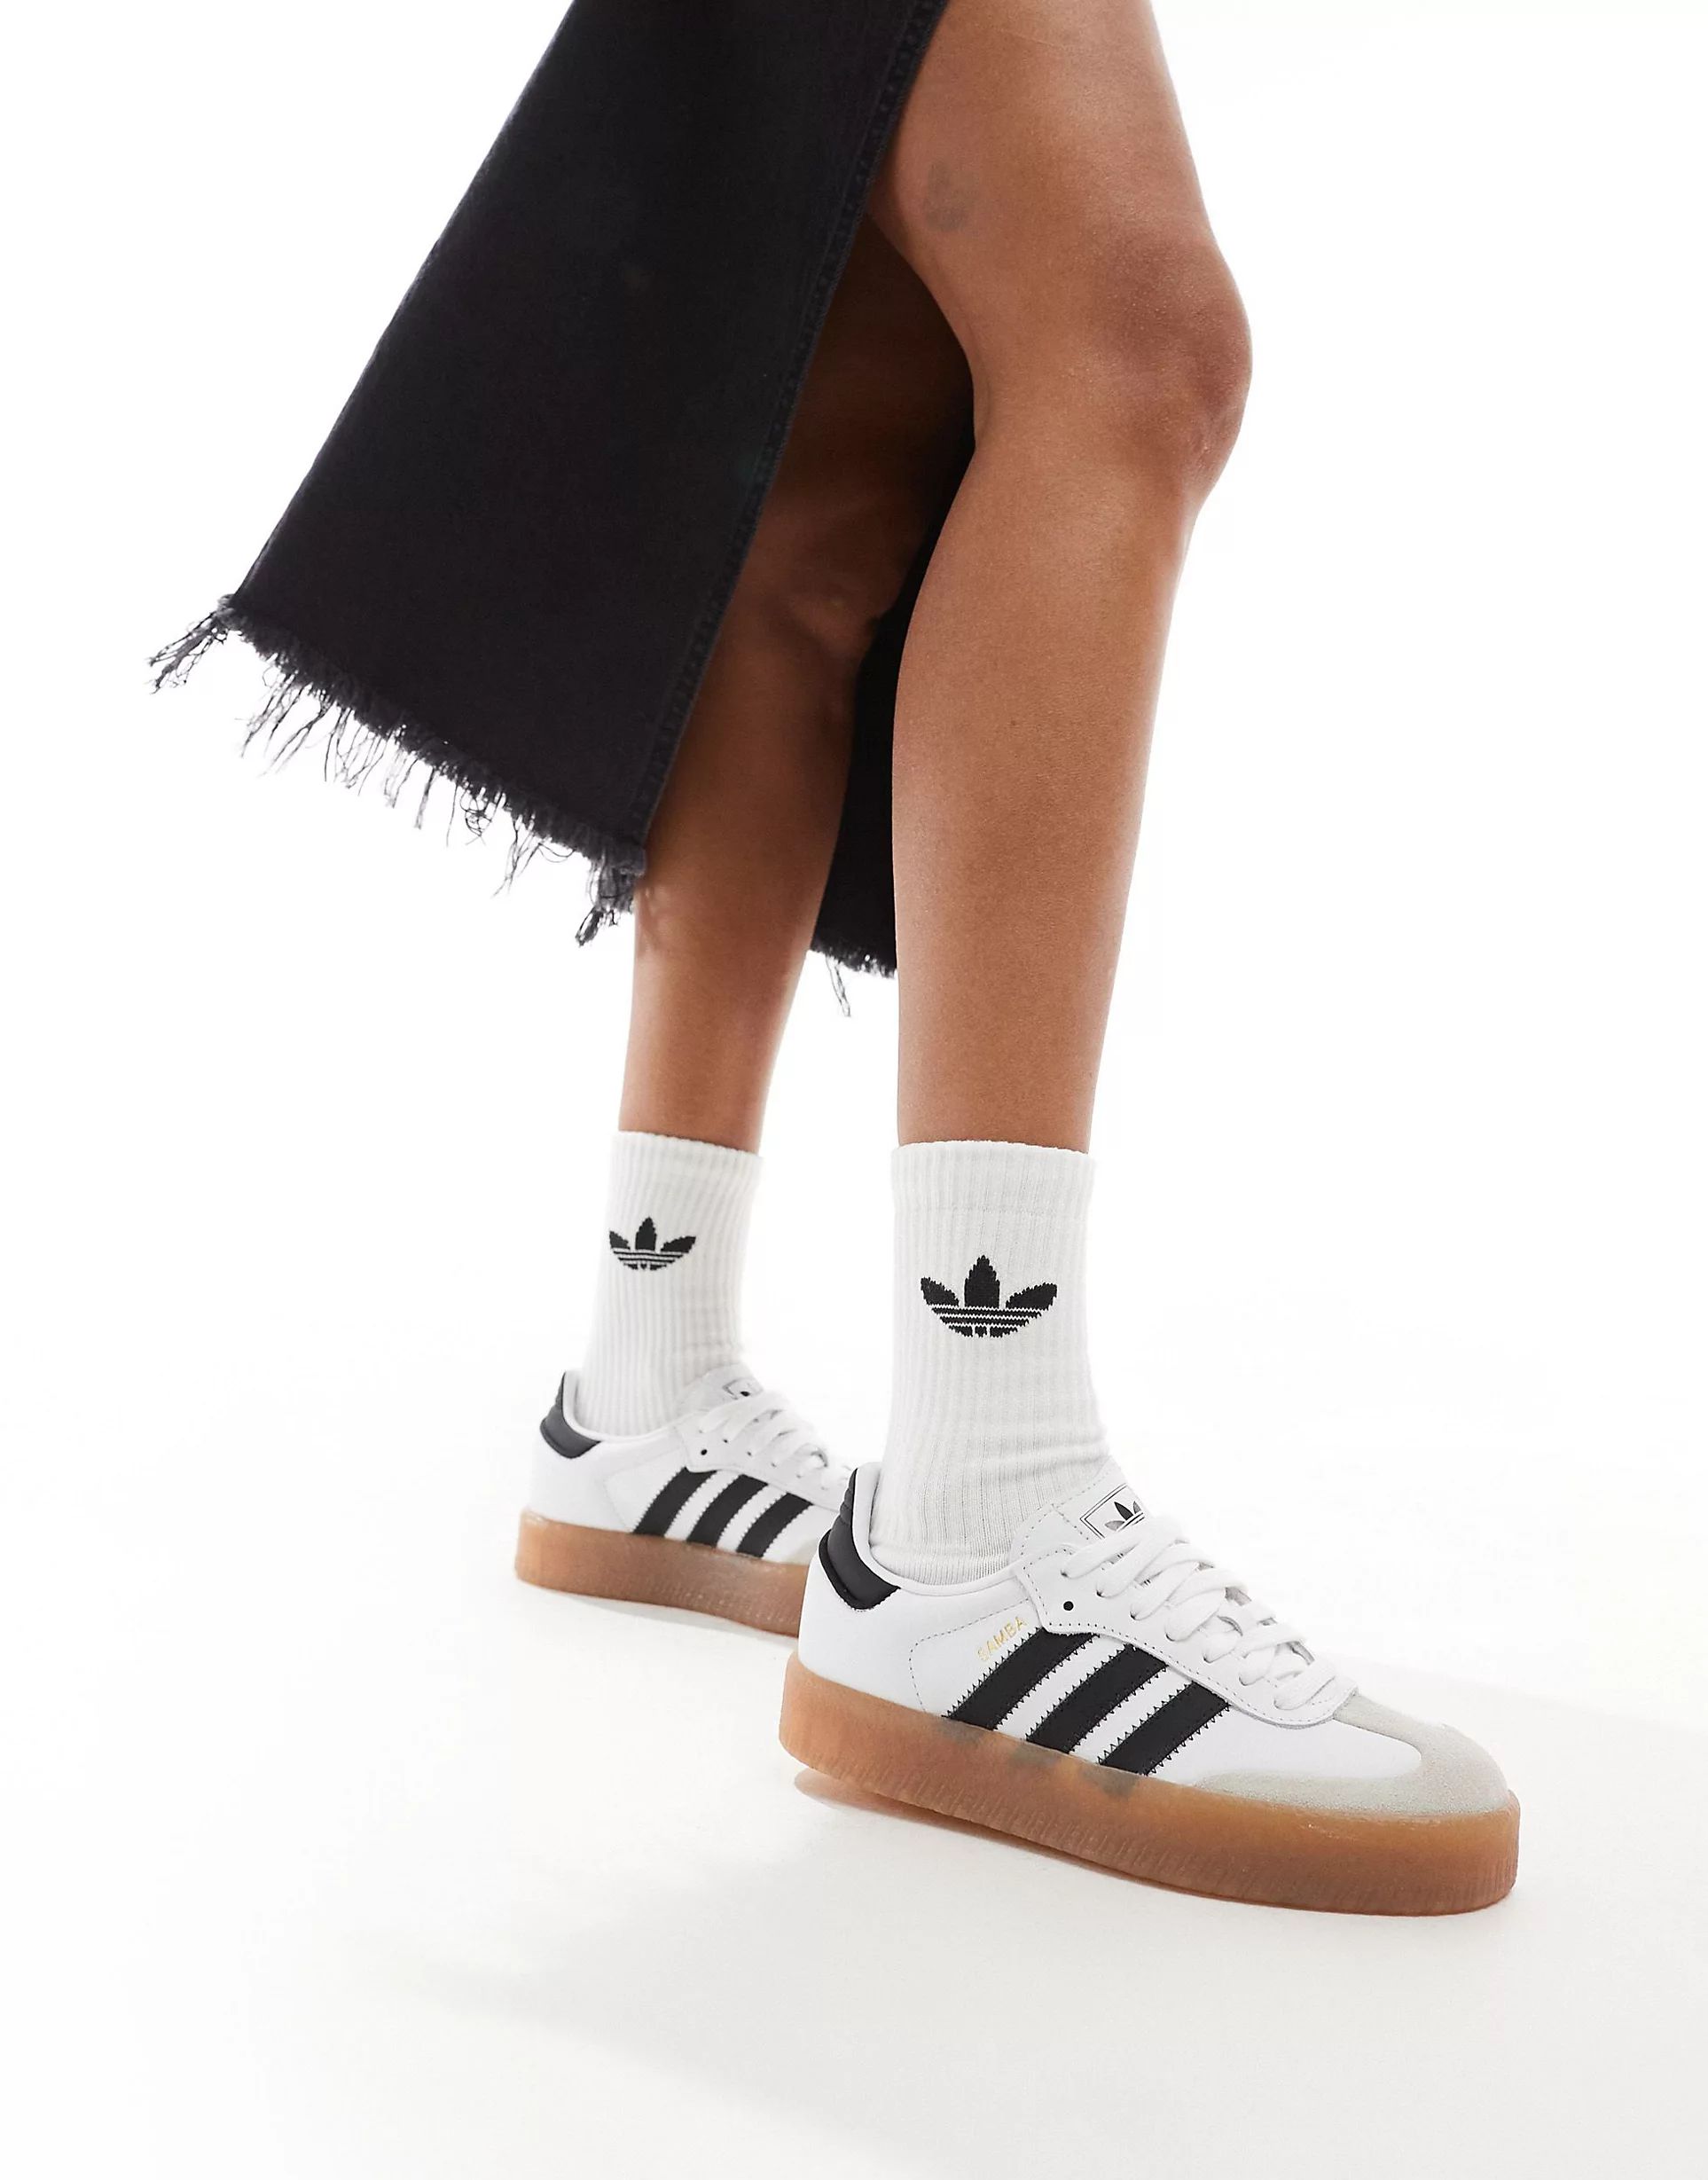 adidas Originals Sambae sneakers in white and black | ASOS | ASOS (Global)